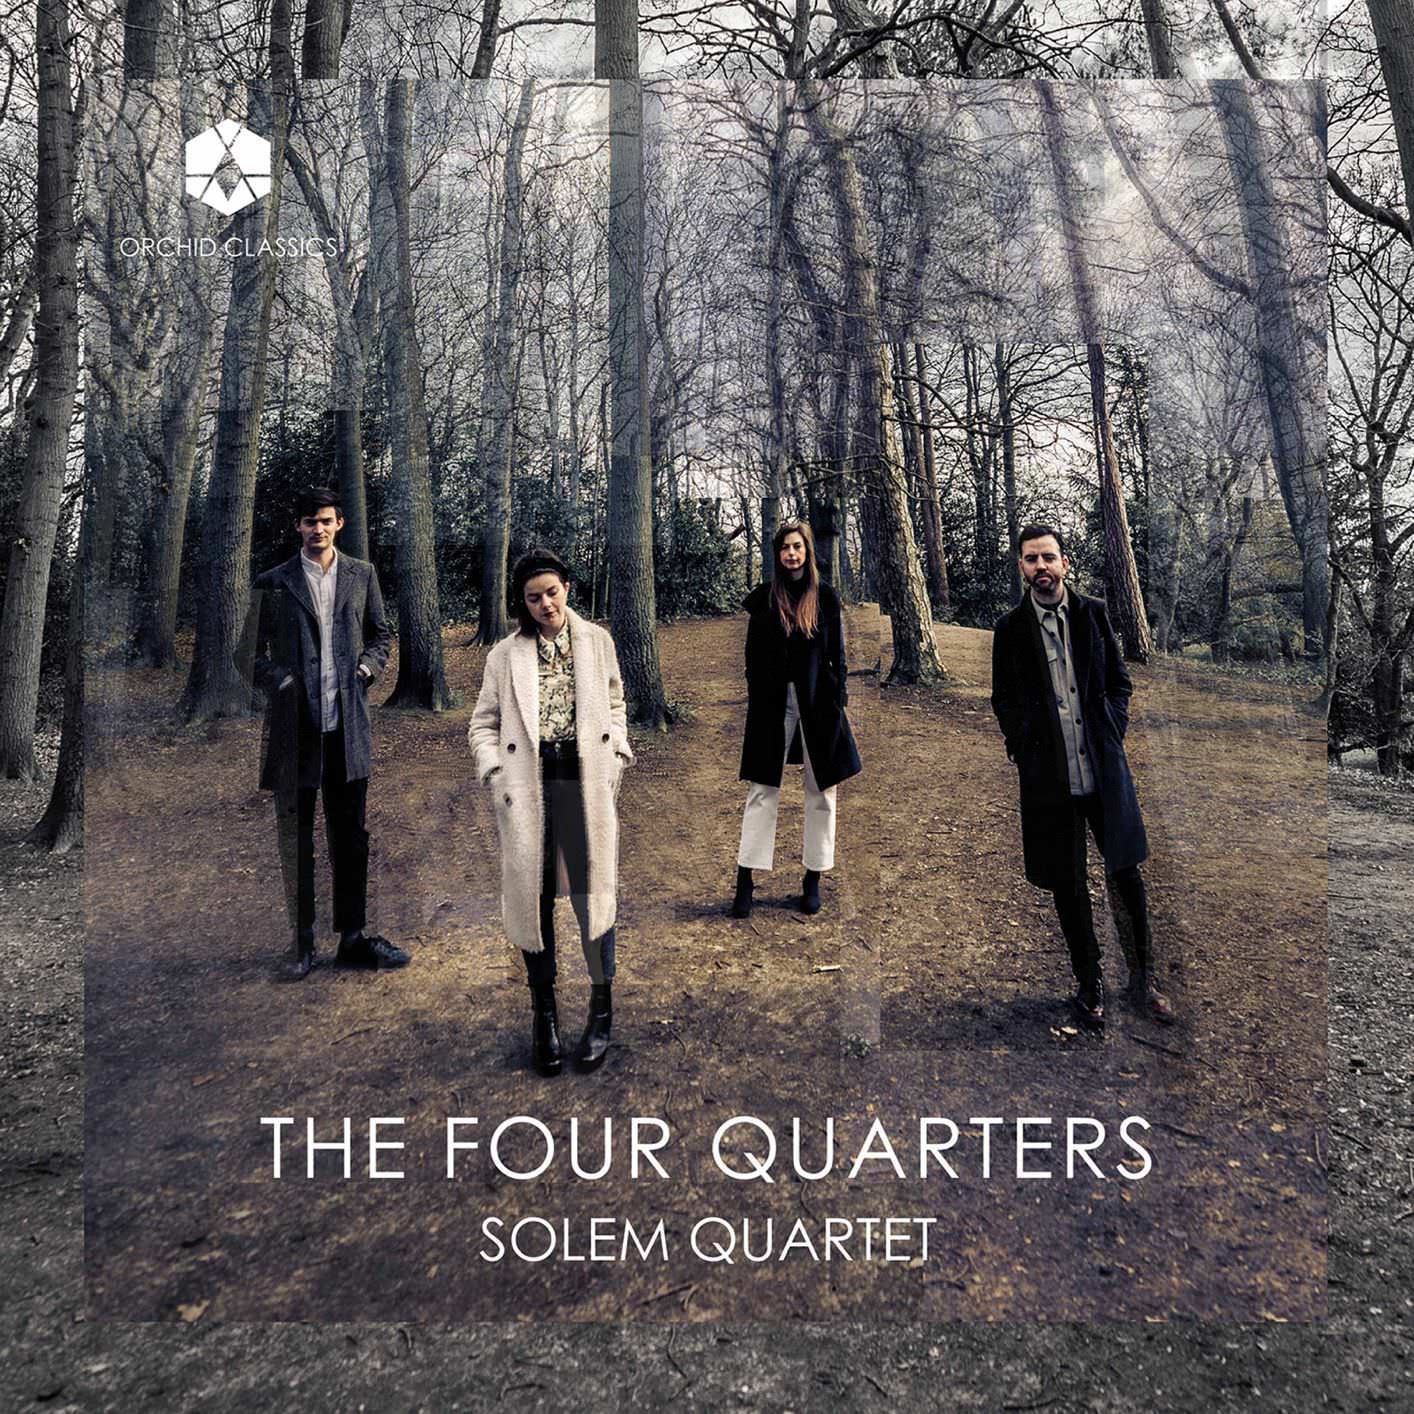 The Four Quarters, The Solem Quartet